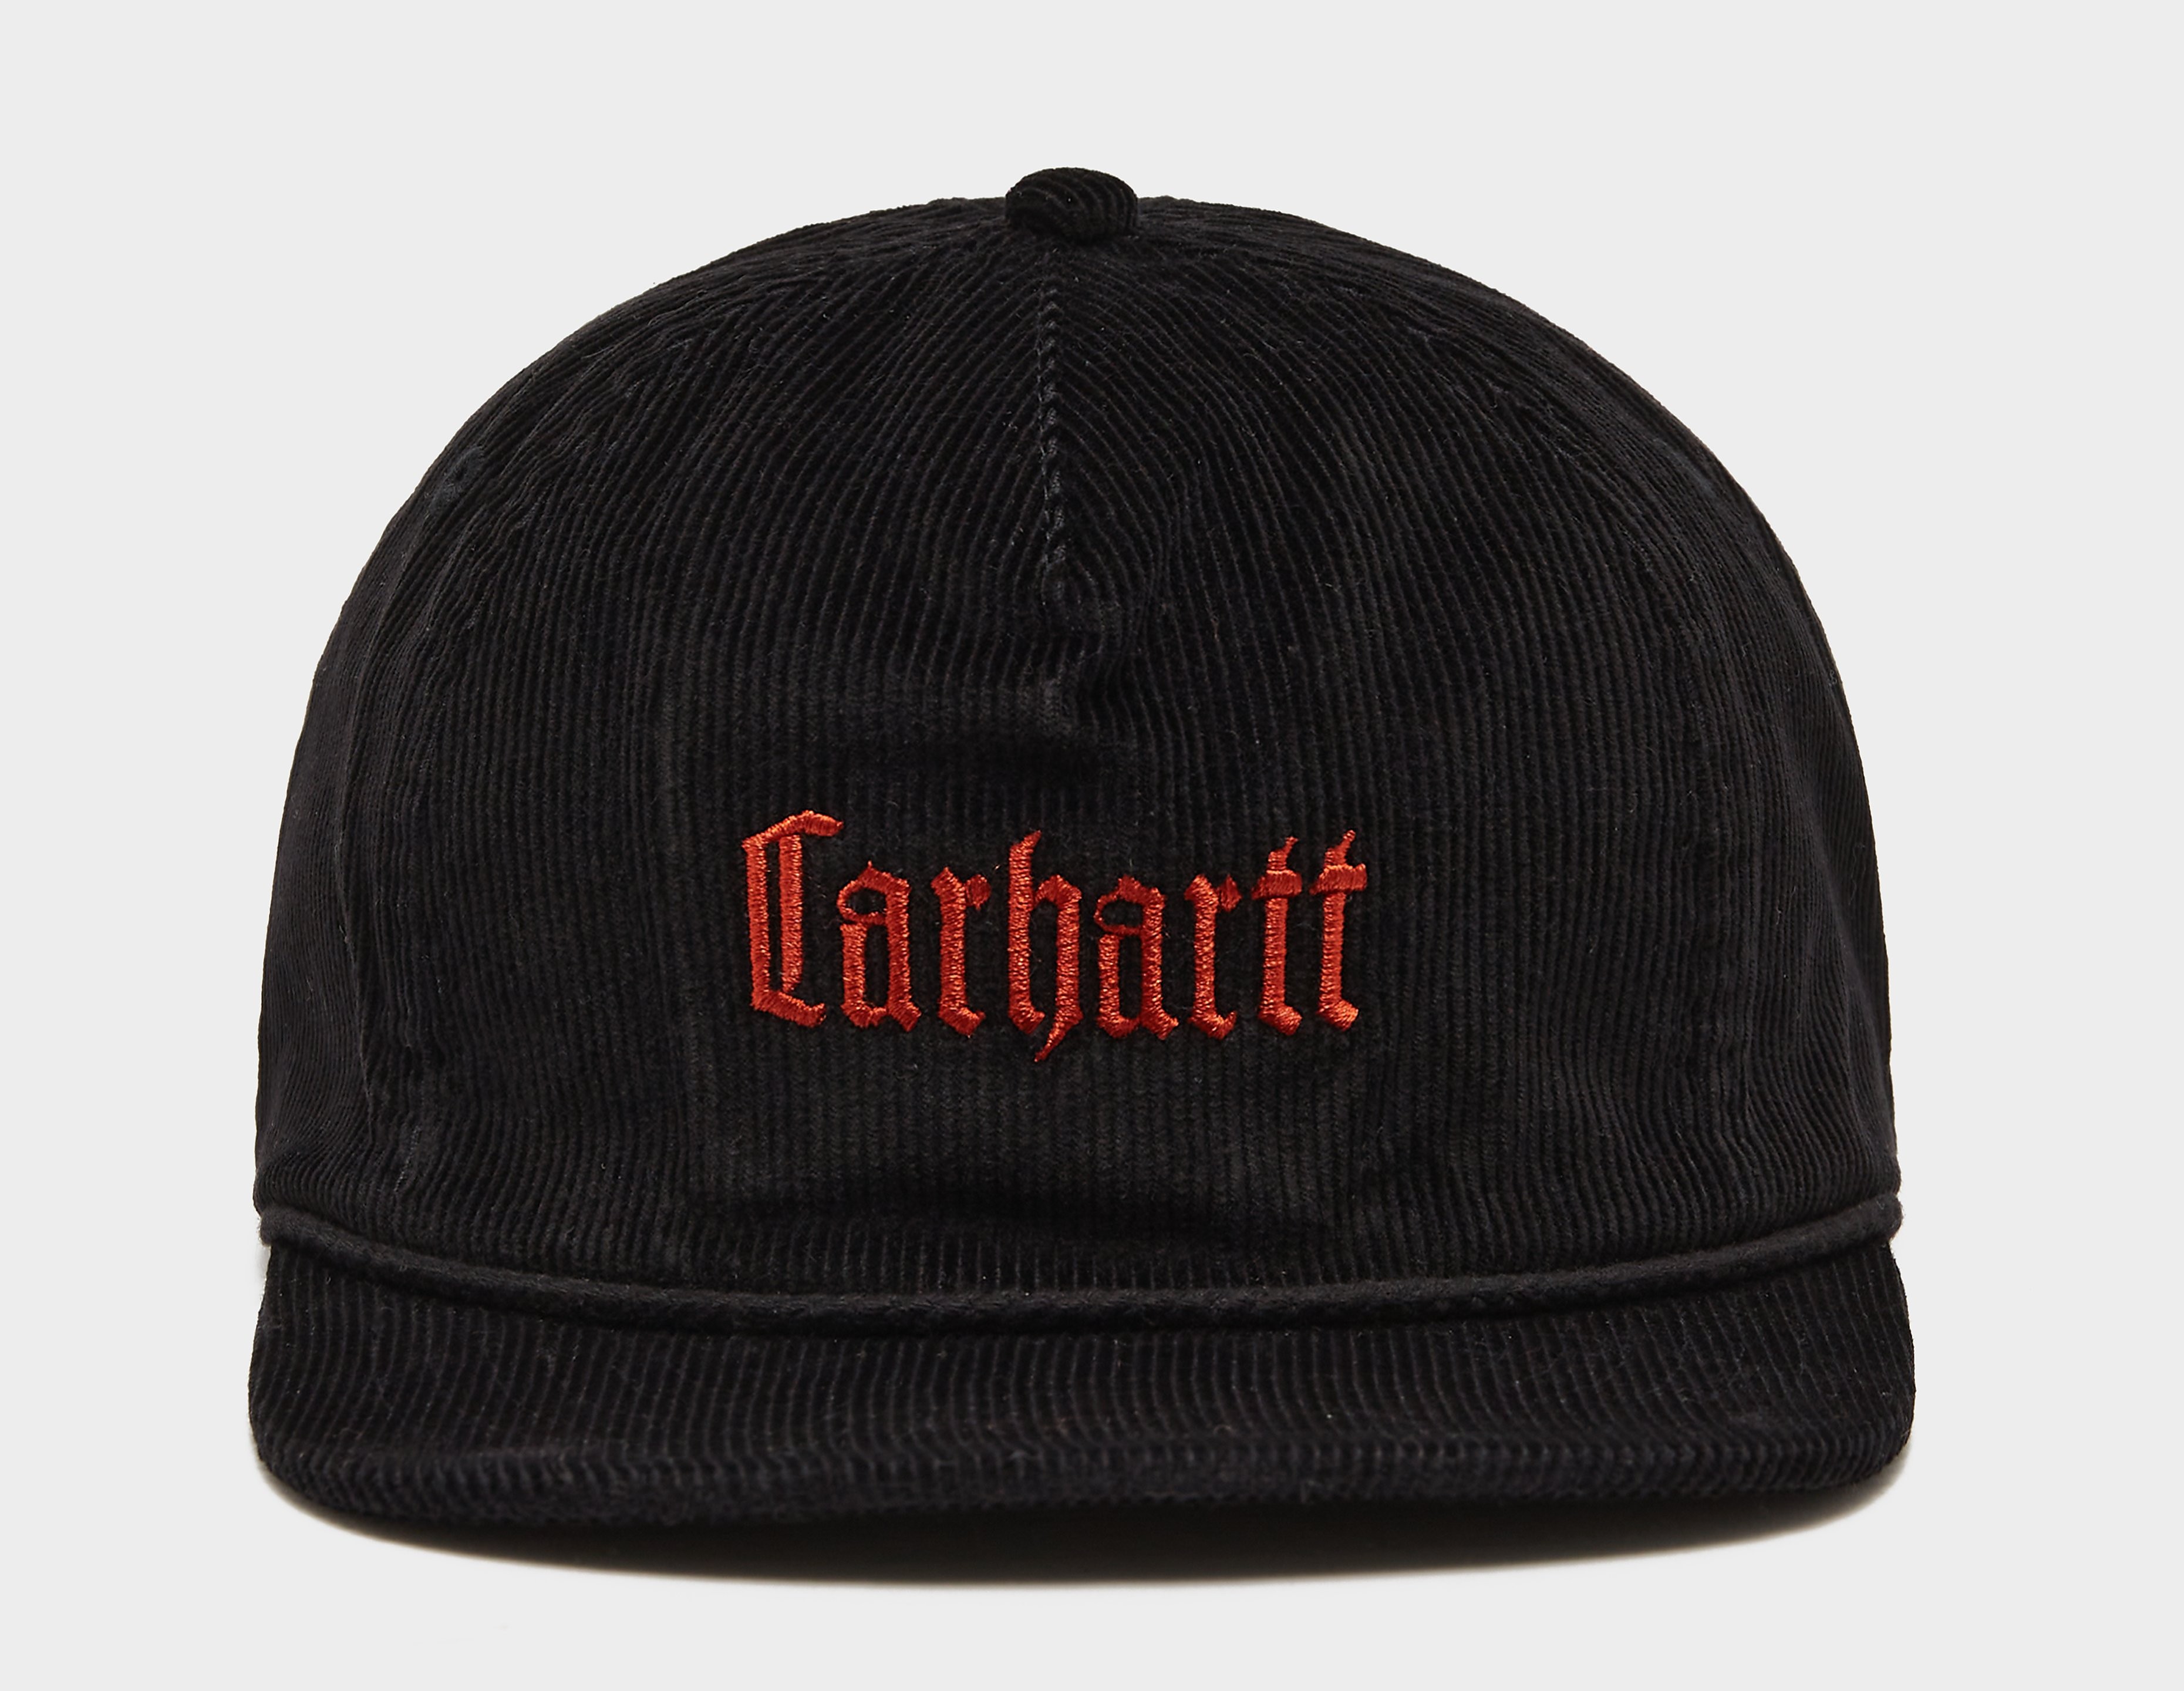 Carhartt WIP LETTERMAN CAP